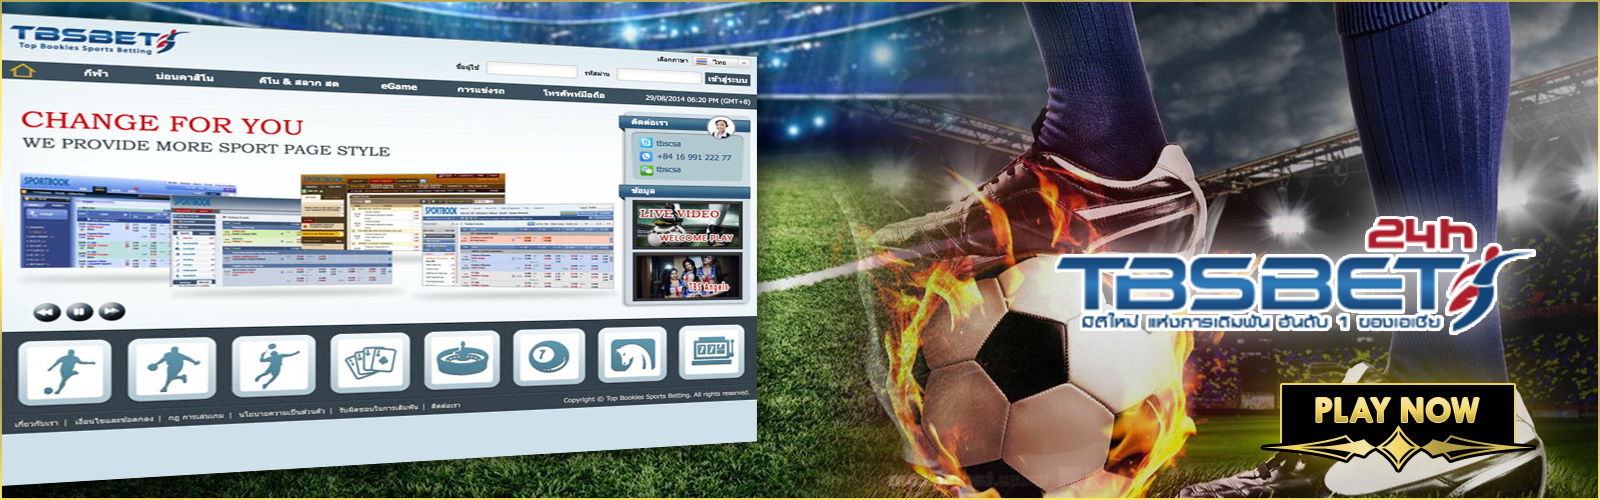 sportsbook bet online login